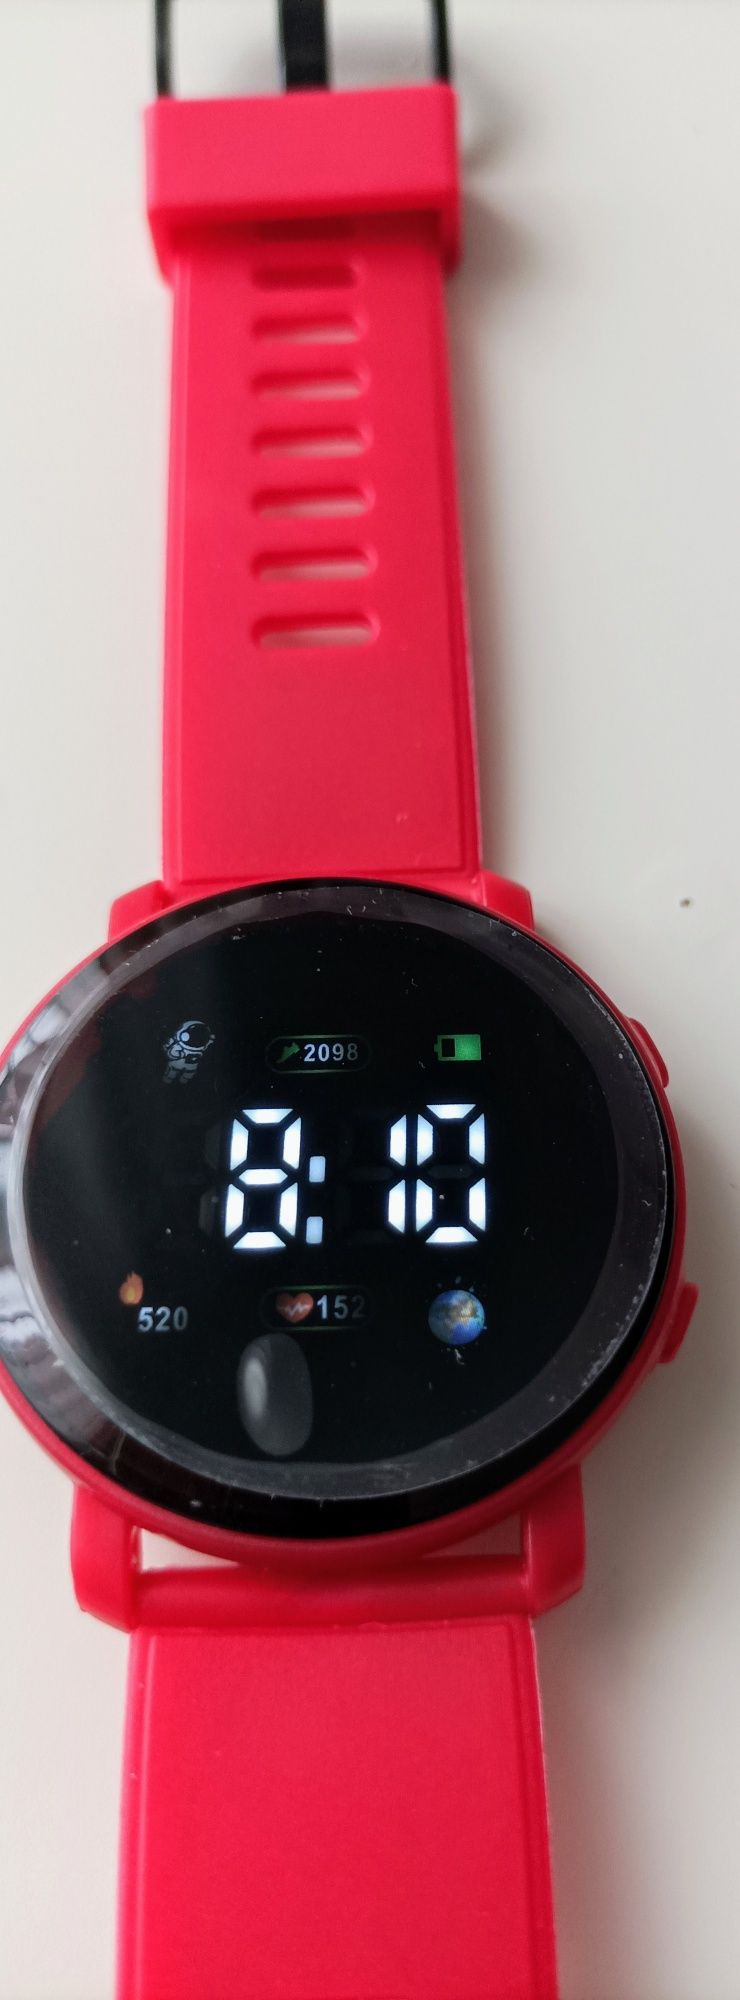 Zegarek elektroniczny czerwony Nowy